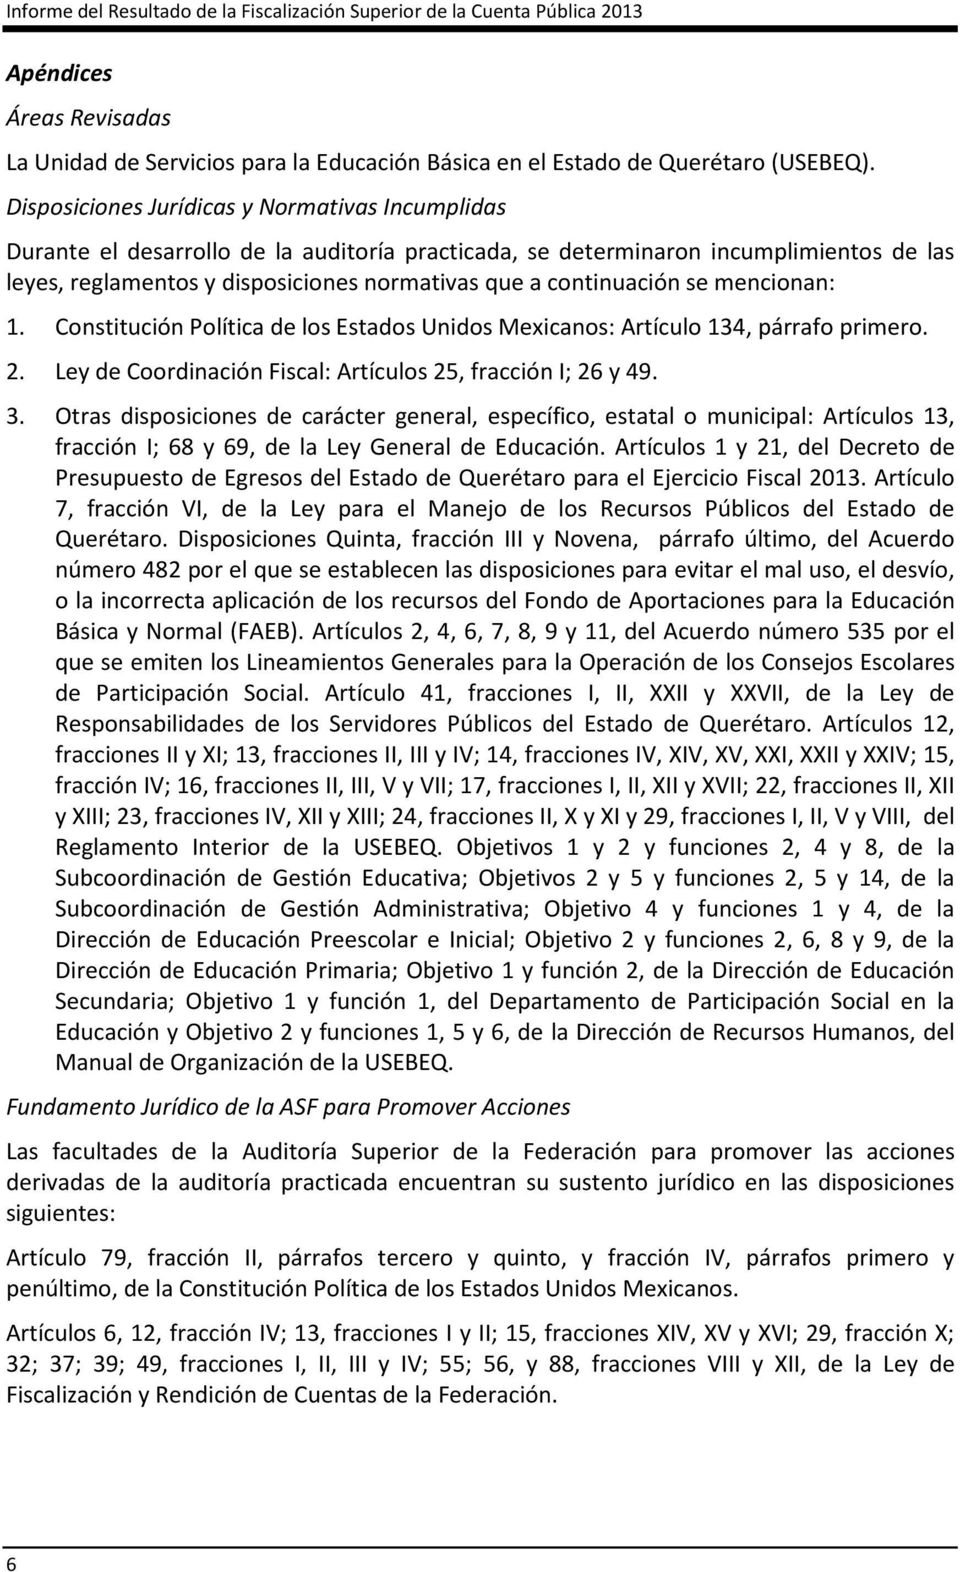 continuación se mencionan: 1. Constitución Política de los Estados Unidos Mexicanos: Artículo 134, párrafo primero. 2. Ley de Coordinación Fiscal: Artículos 25, fracción I; 26 y 49. 3.